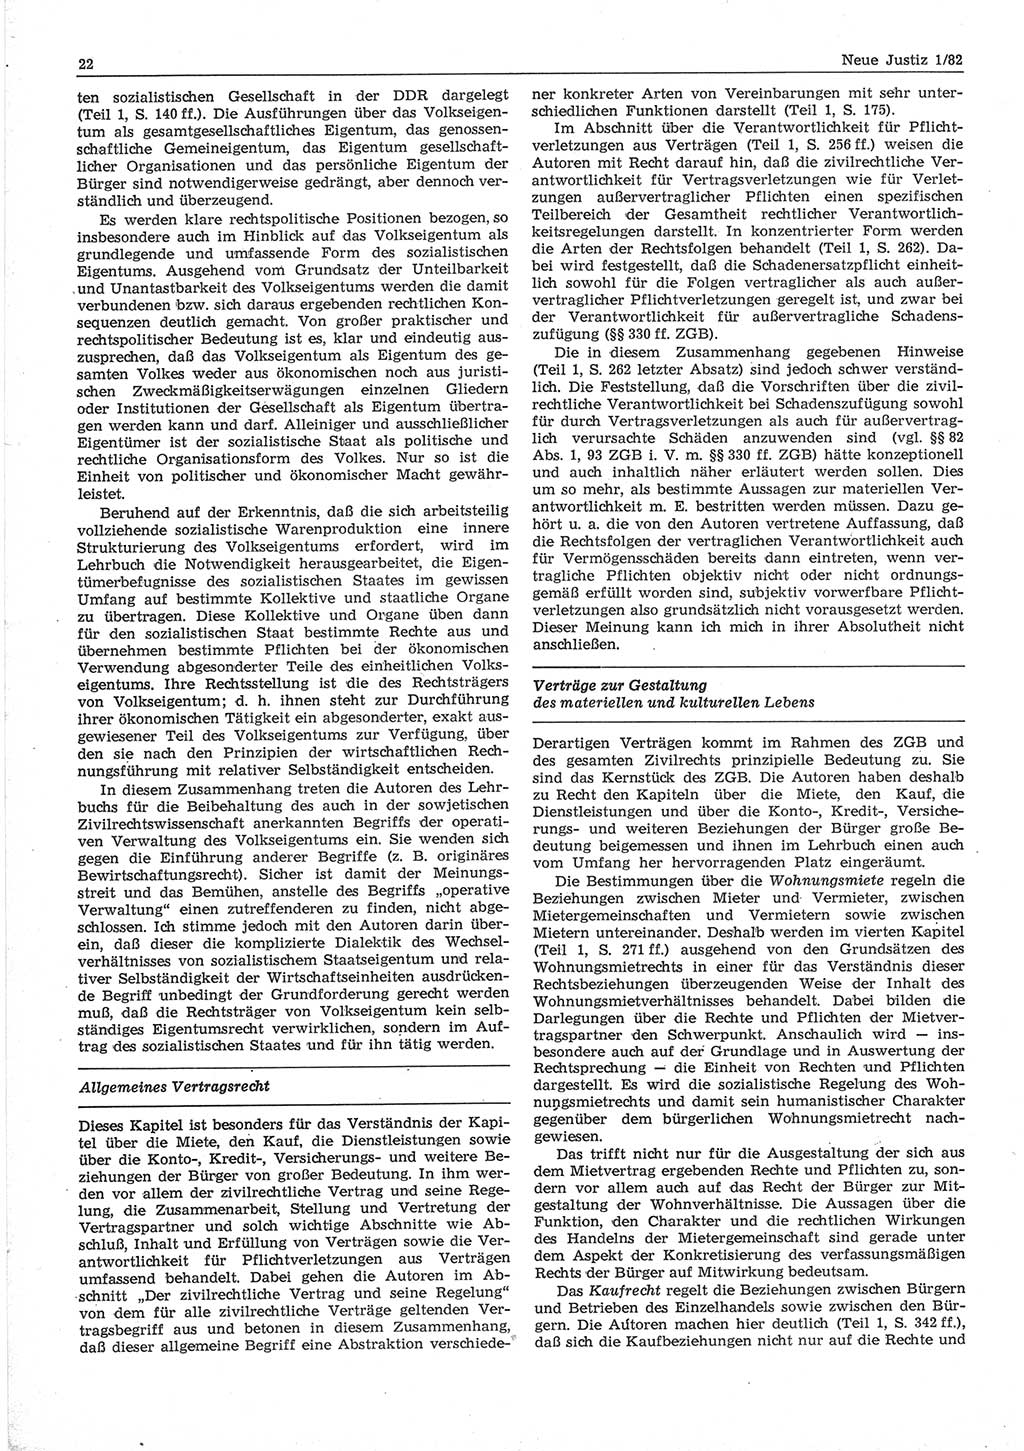 Neue Justiz (NJ), Zeitschrift für sozialistisches Recht und Gesetzlichkeit [Deutsche Demokratische Republik (DDR)], 36. Jahrgang 1982, Seite 22 (NJ DDR 1982, S. 22)